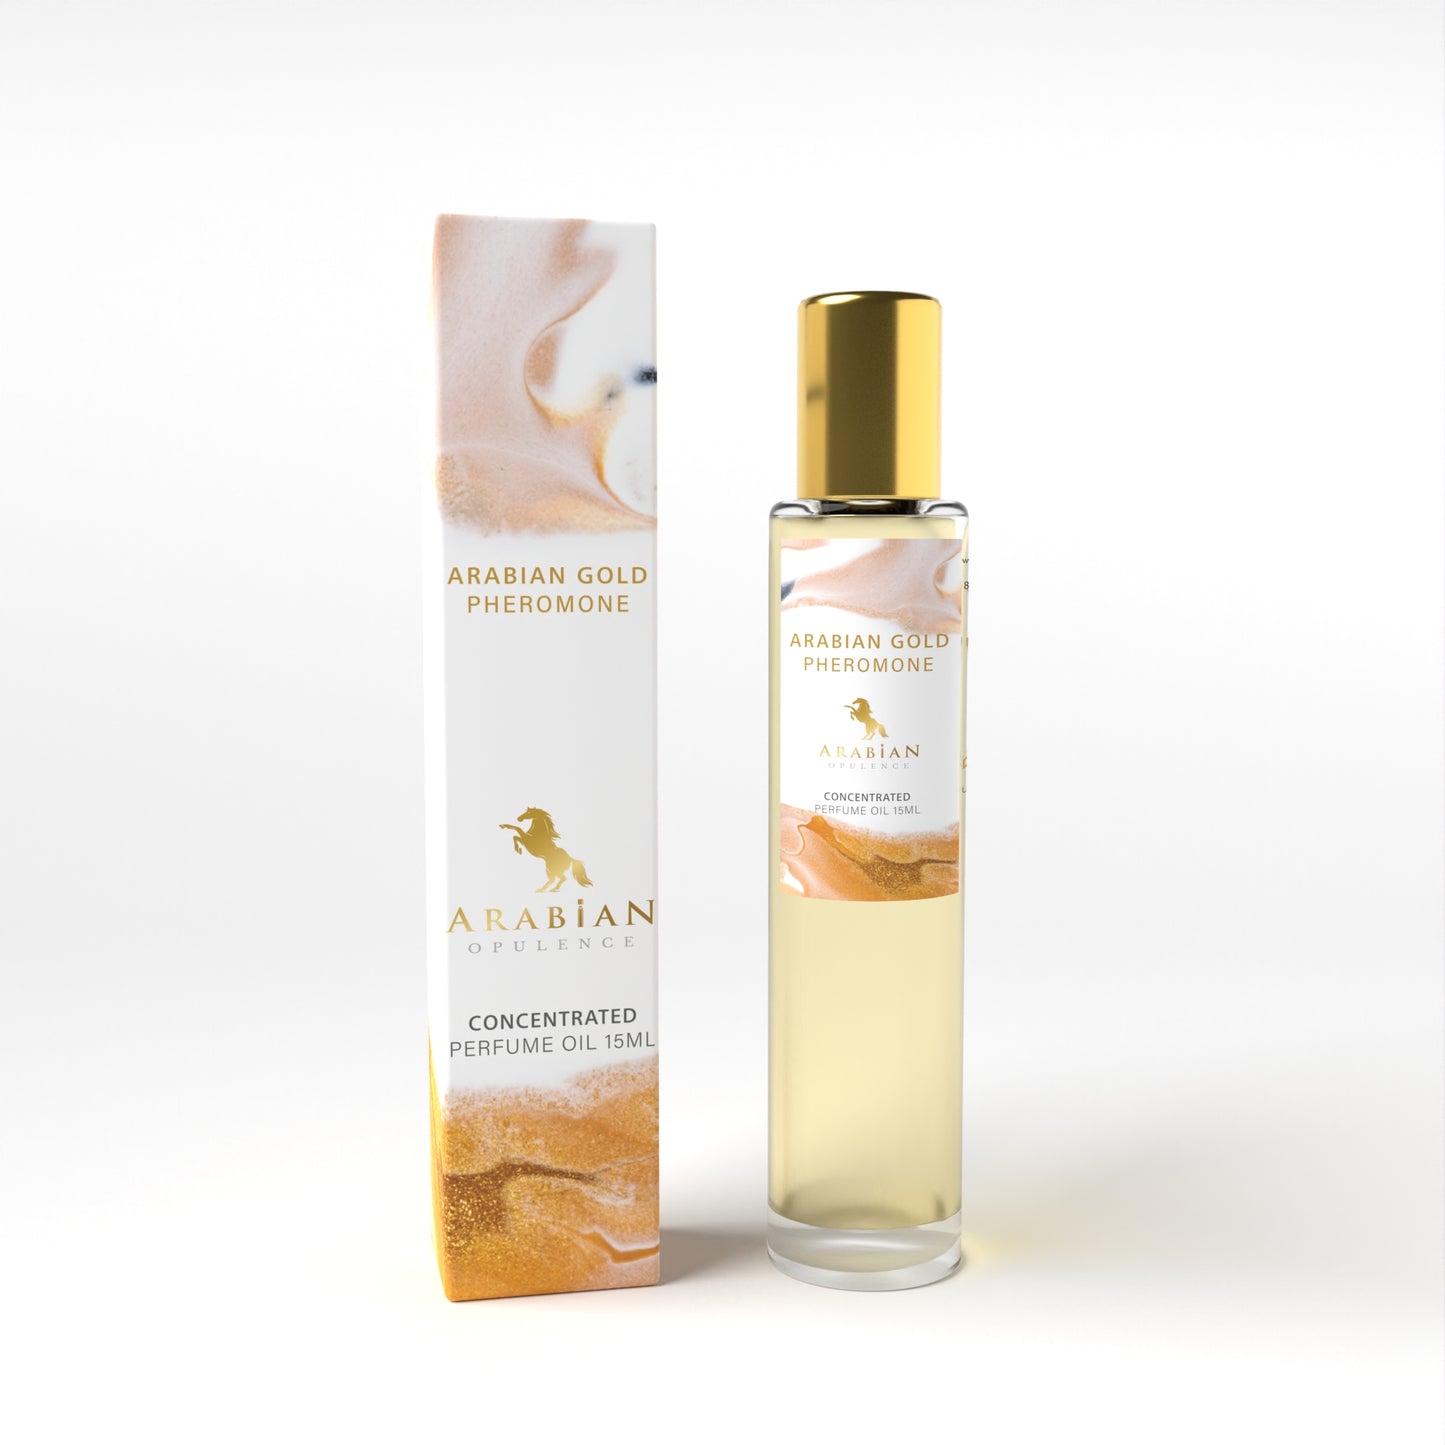 Arabian Gold Pheromone - 15ML Perfume oil for men and women